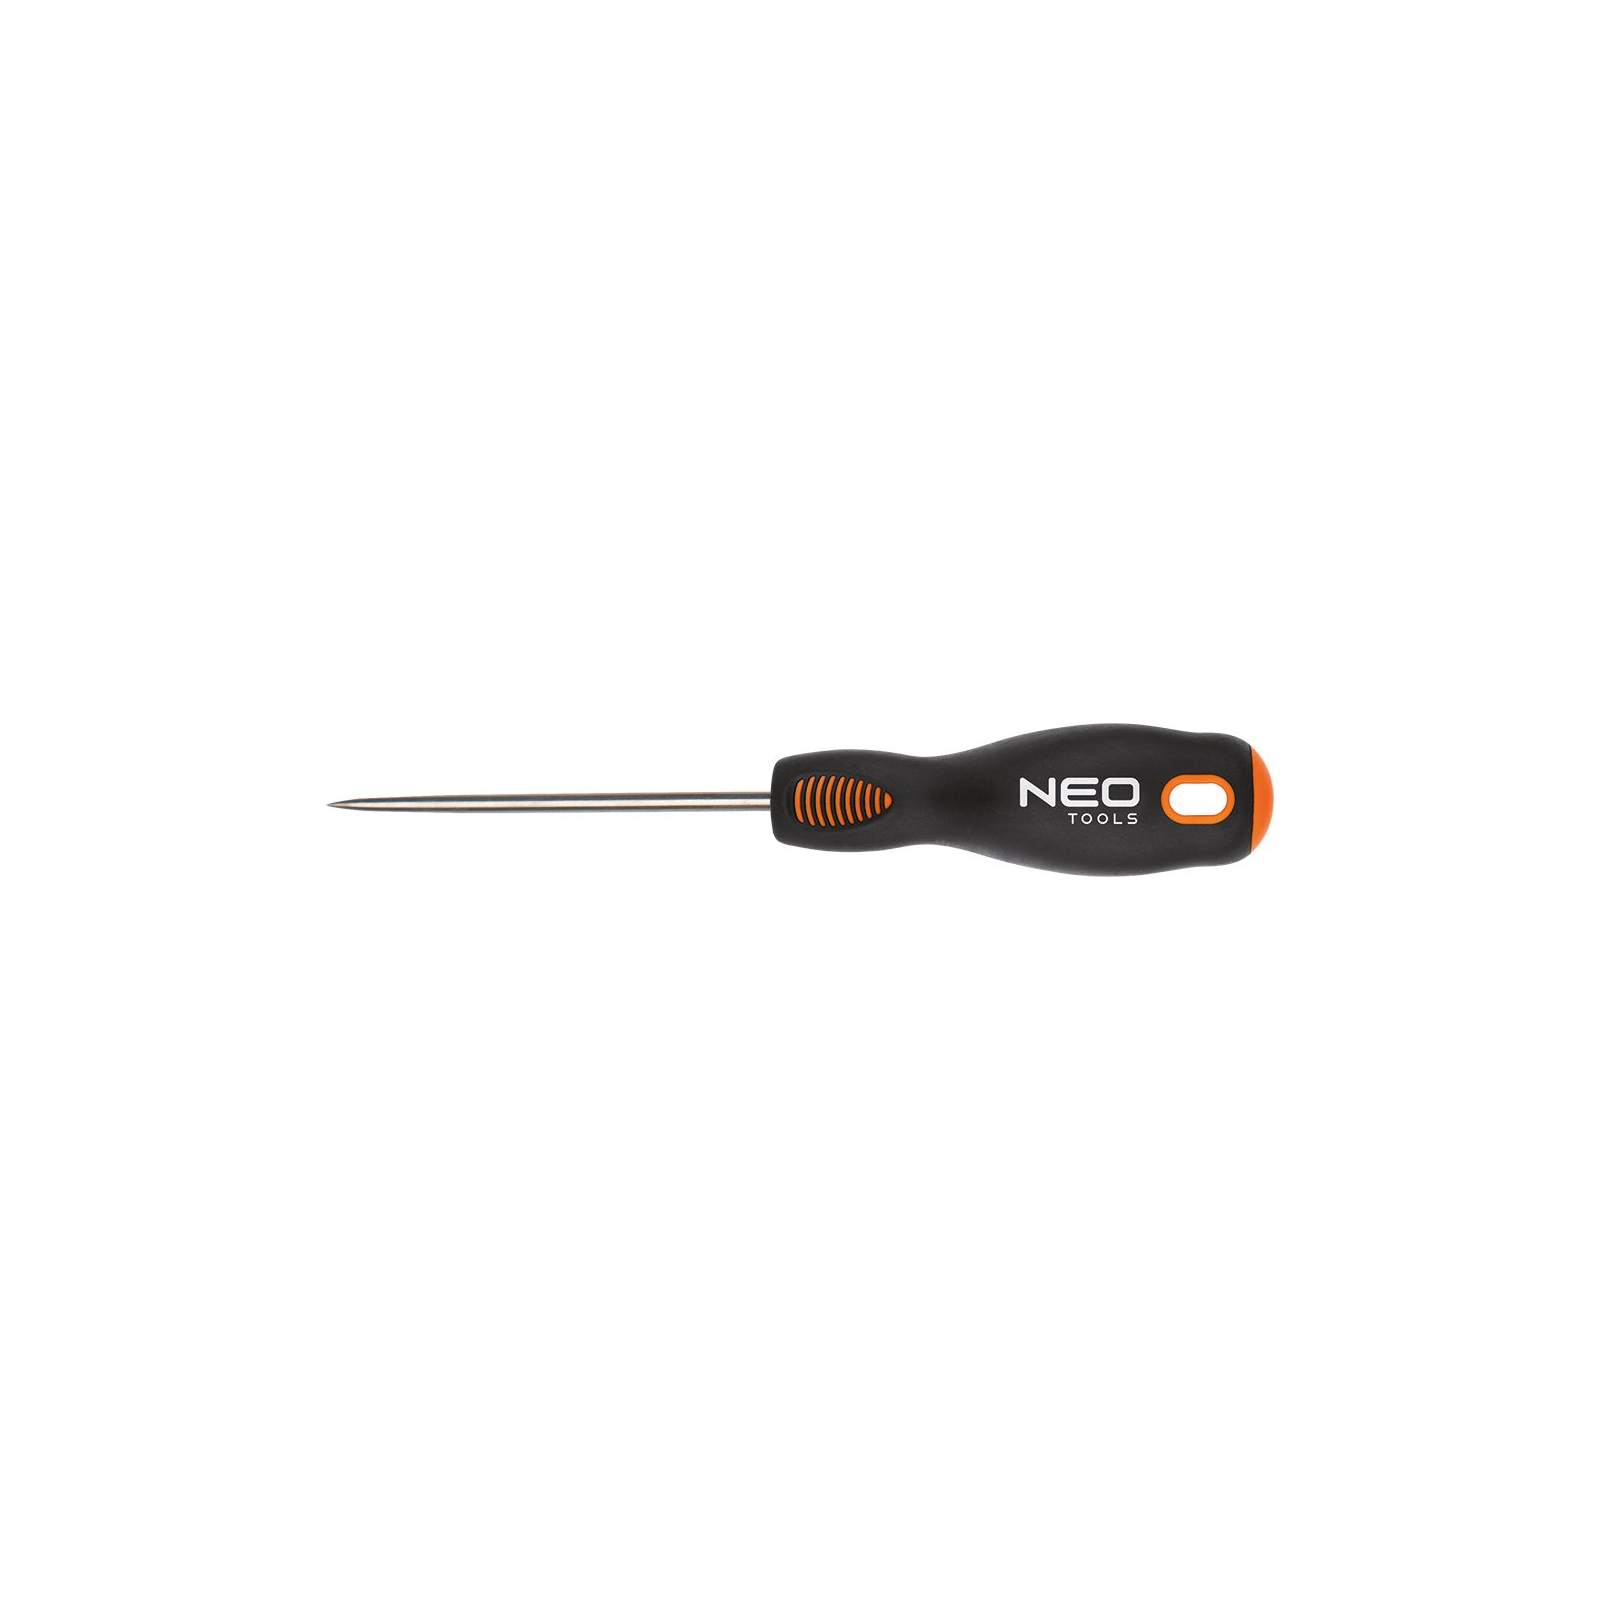 Набор инструментов Neo Tools крюки NEO 140 мм, набор 4 шт, (04-230) изображение 2